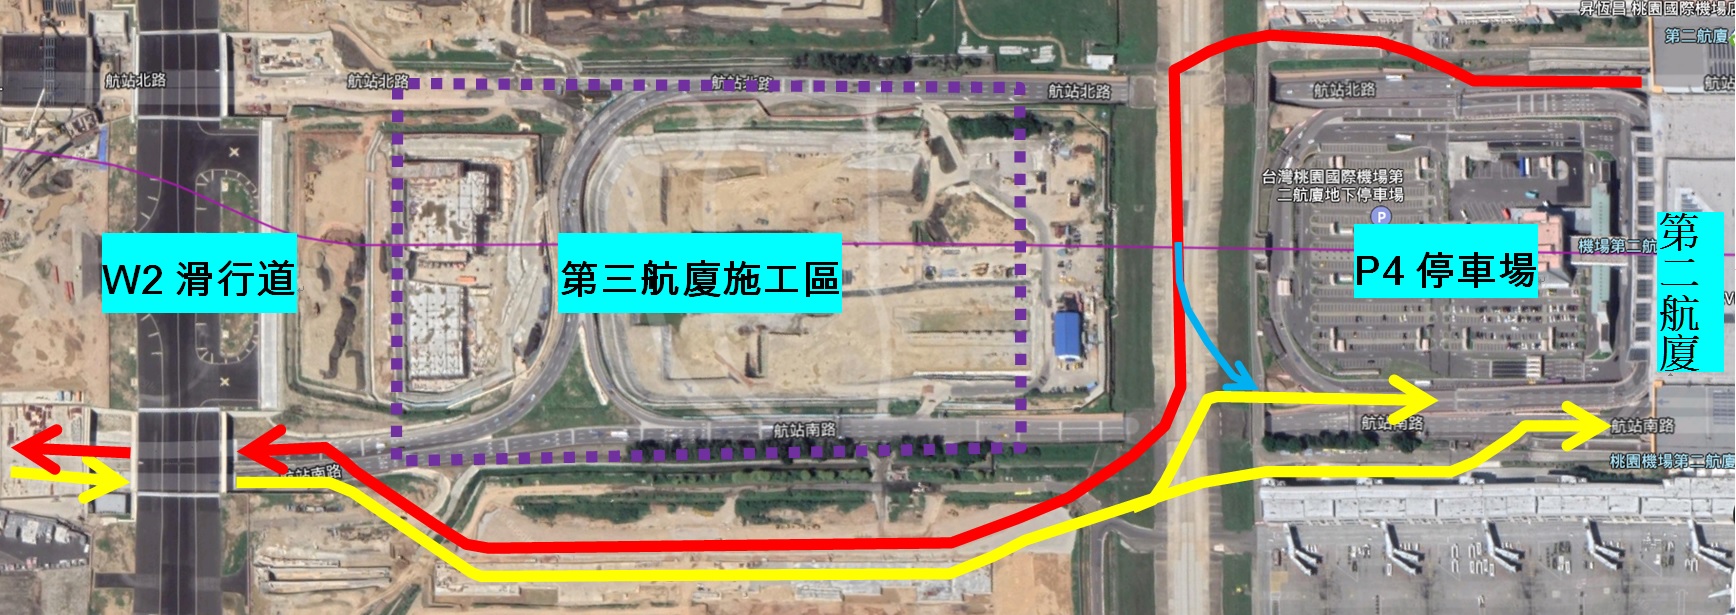 Pembangunan Terminal 3 diperkirakan akan terselesaikan secara konsekutif dari tahun 2024 sampai 2026. Sumber: PT Bandara Internasional Taoyuan